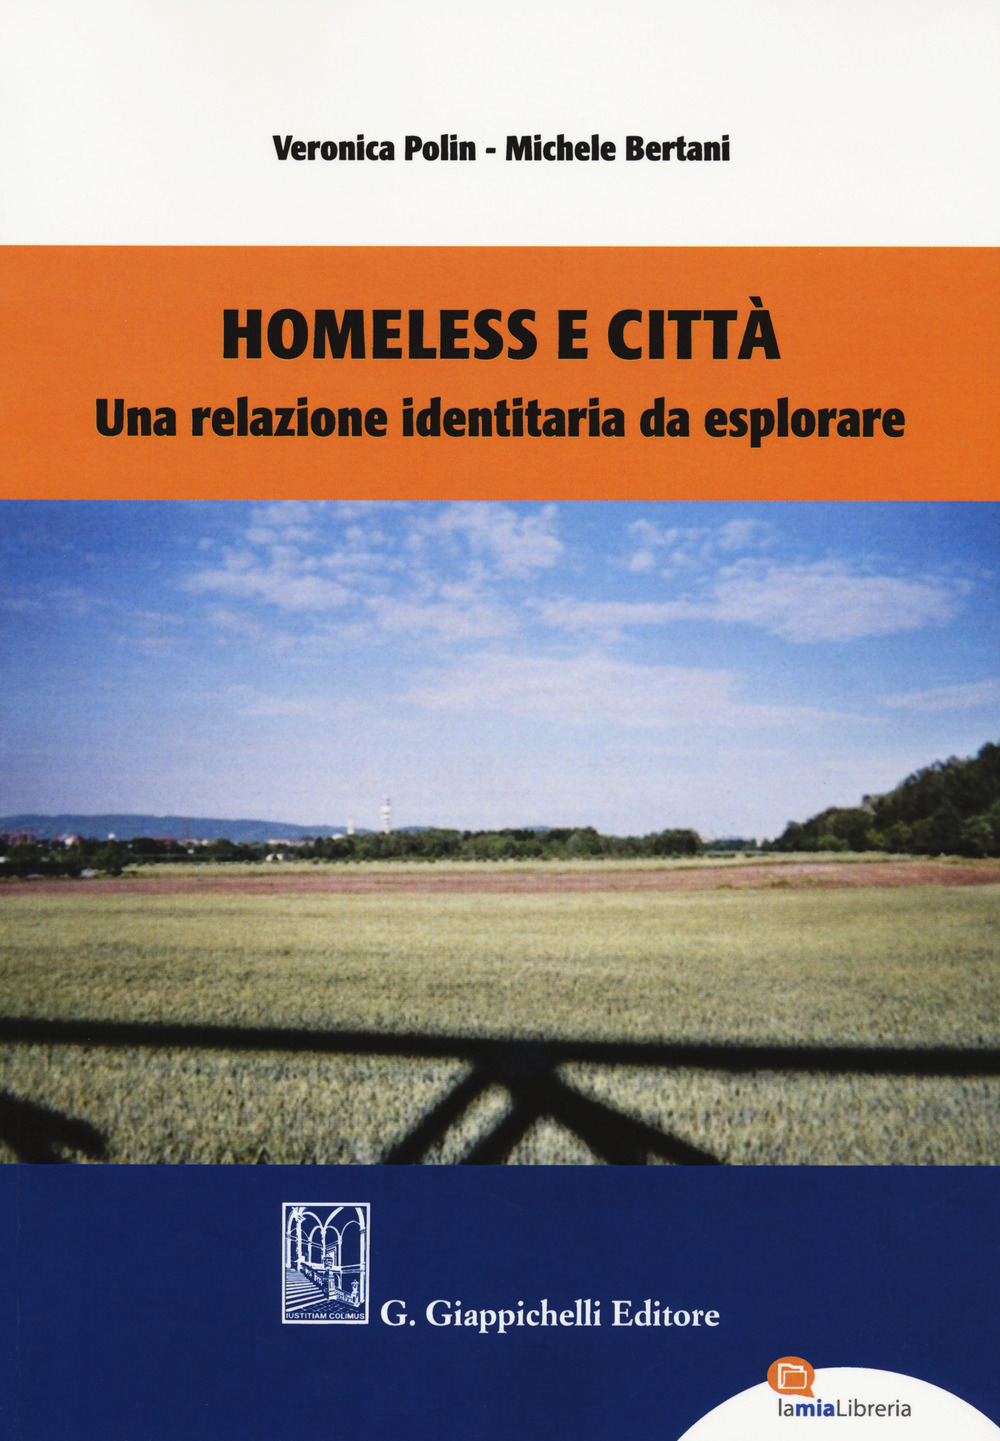 Homeless e città. Una relazione identitaria da esplorare